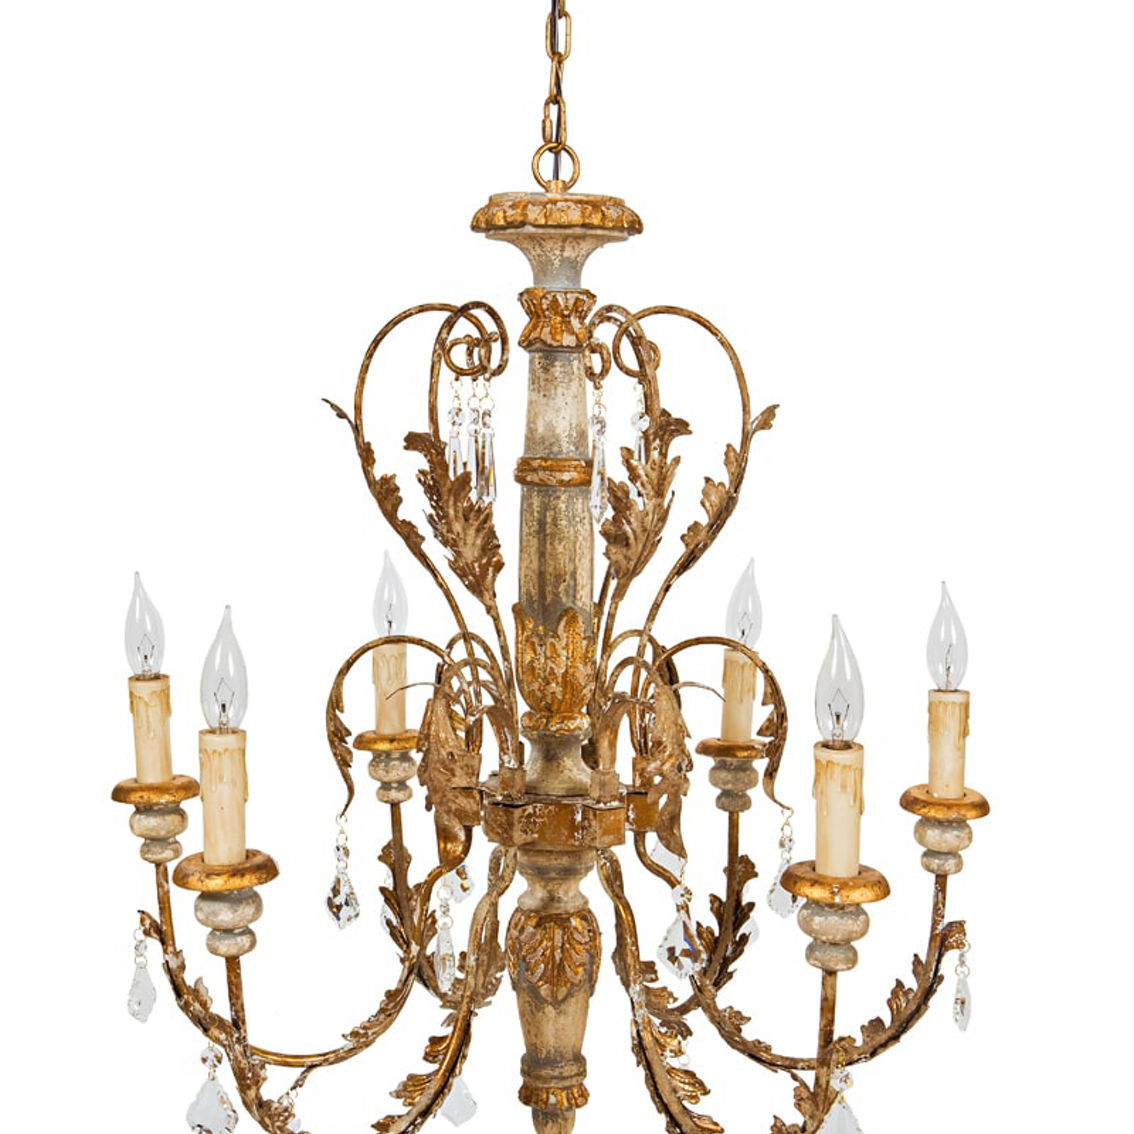 Manor Luxe, Vanderbilt Wood, Metal & Glass Crystal Luxury 6 Candelabra Chandelier - Image 2 of 2